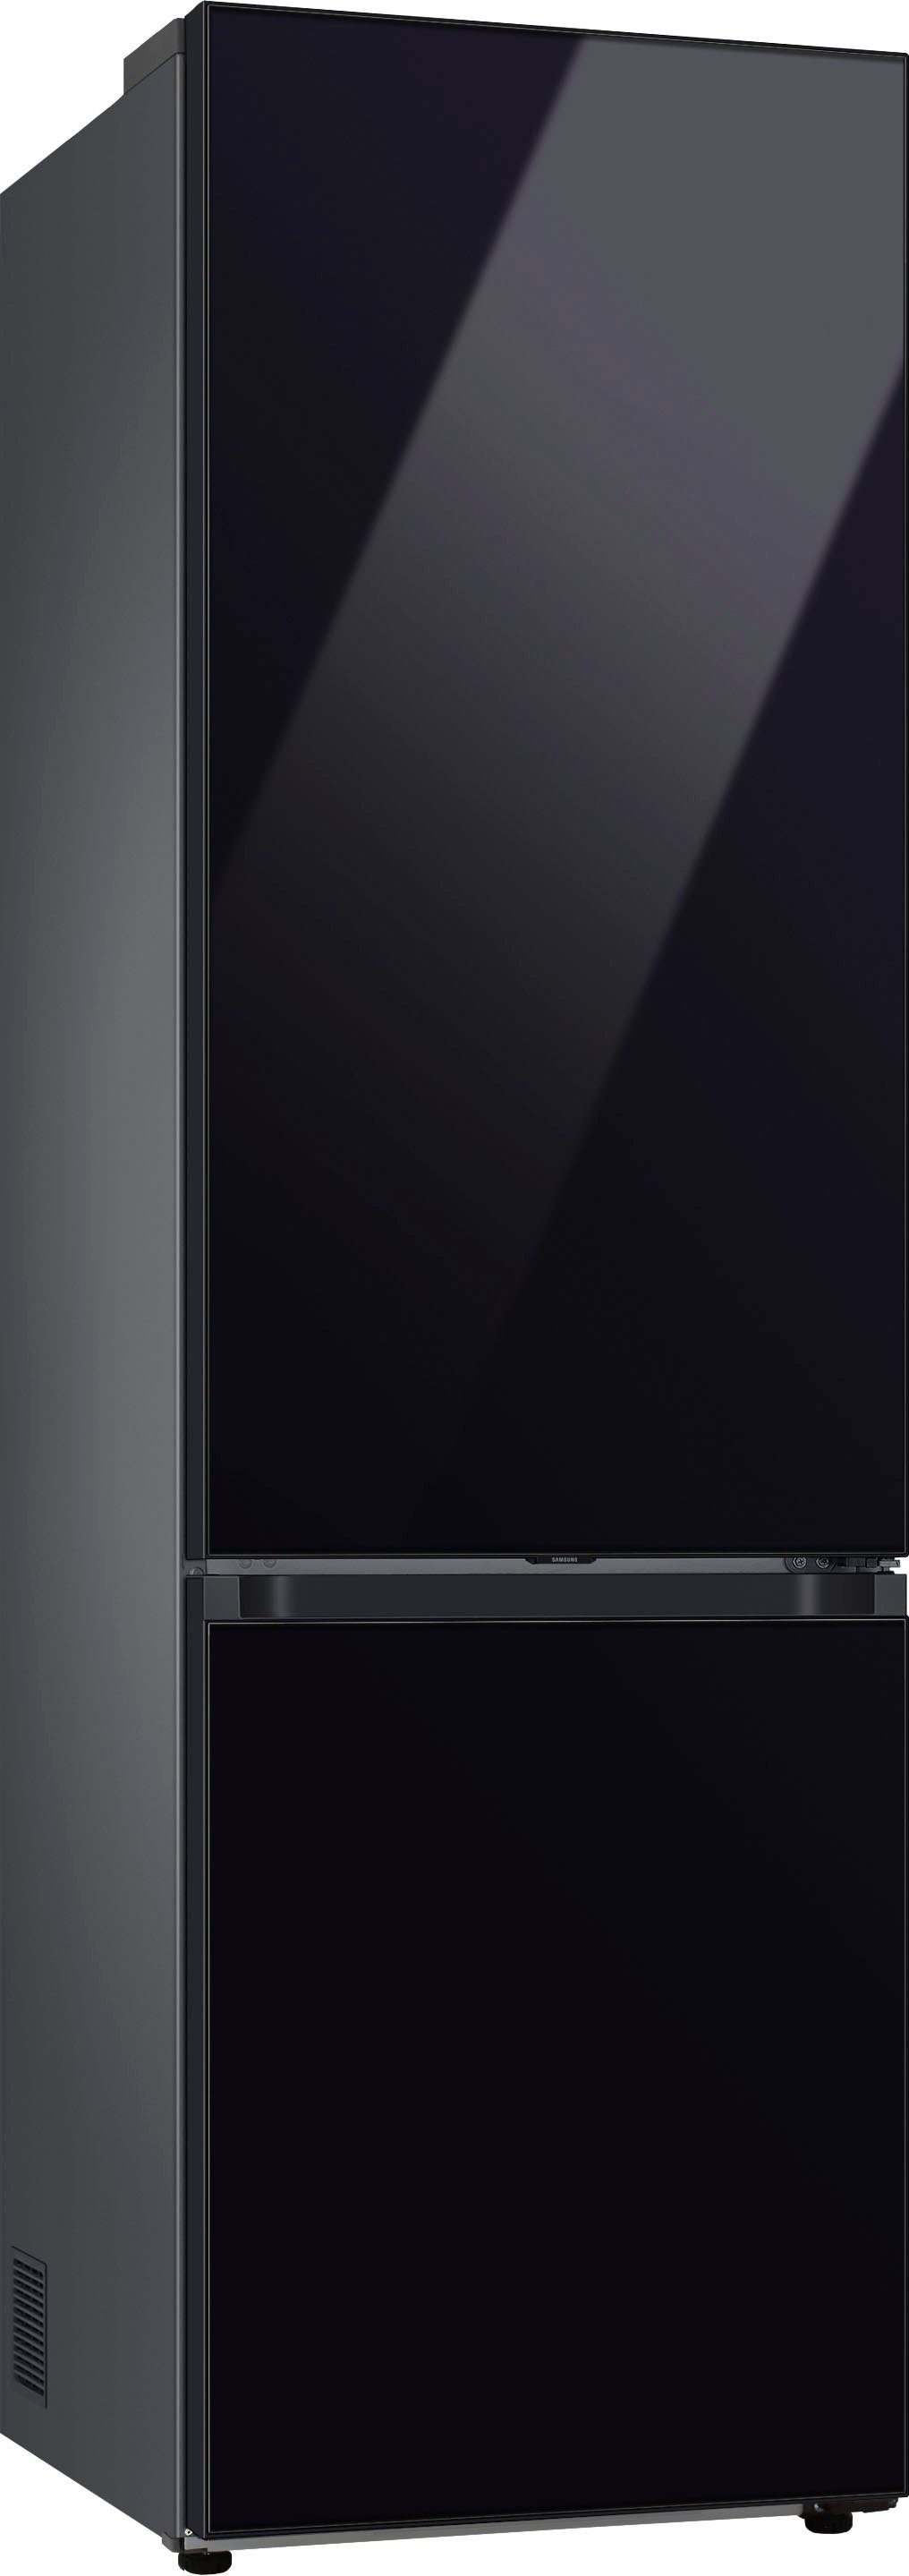 Samsung Kühl-/Gefrierkombination RL38C6B6C22, 59,5 cm cm hoch, 203 breit